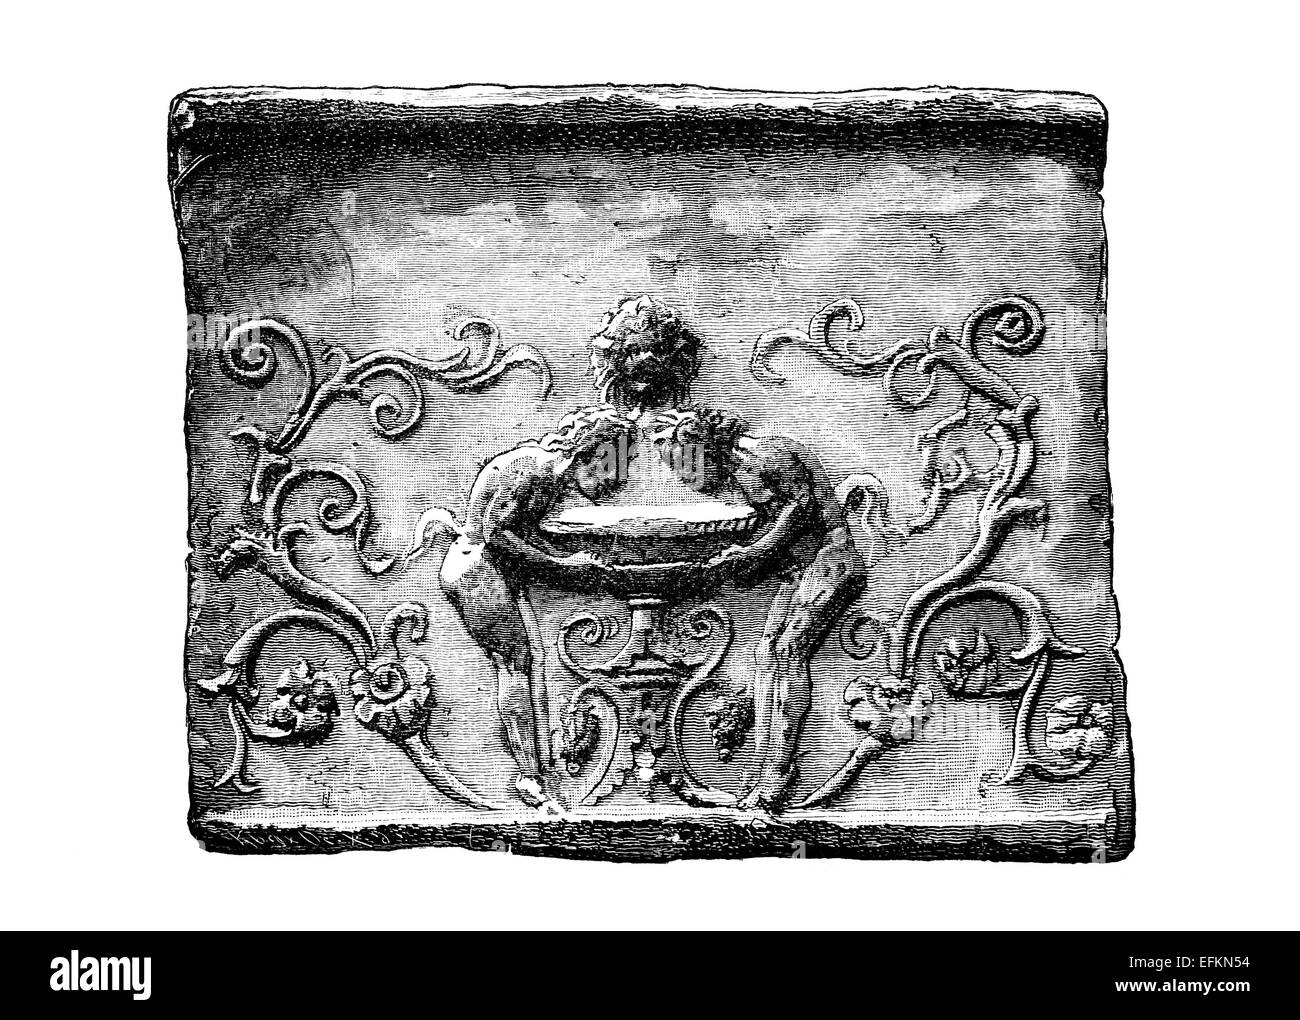 Incisione in stile vittoriano di un giocoso fregio design. Restaurata digitalmente immagine da una metà del XIX secolo enciclopedia. Foto Stock